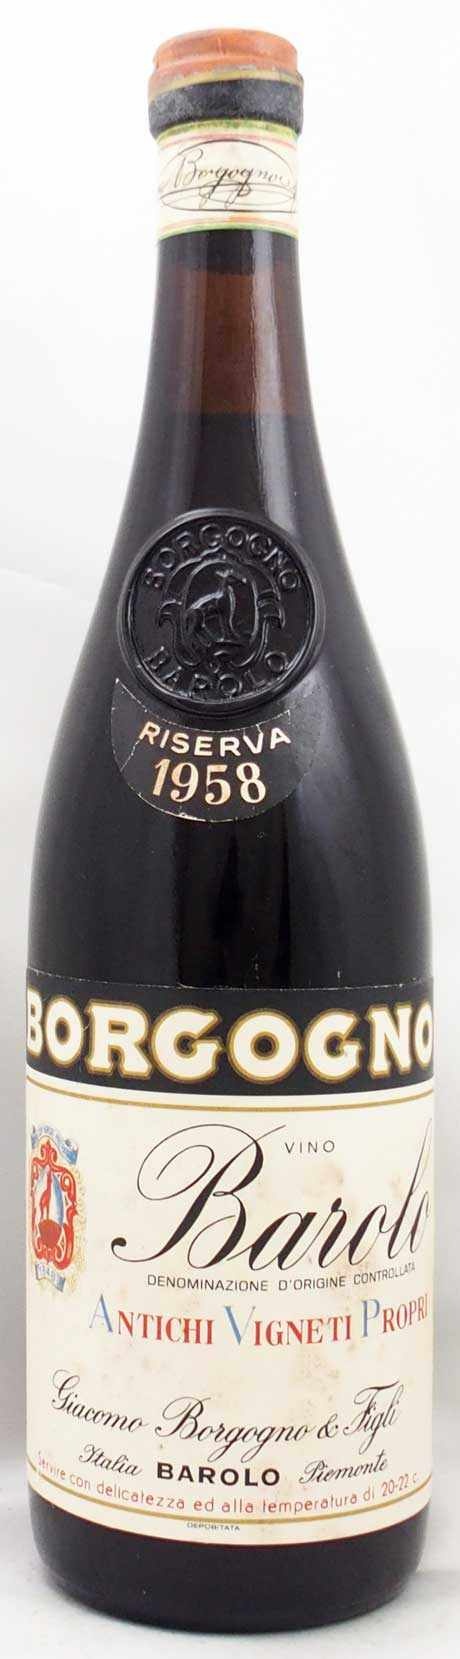 クール便] ボルゴーニョ バローロ リゼルヴァ 1978 赤ワイン ネッビオーロ イタリア 750ml オールドヴィンテージ 蔵出し 赤ワイン